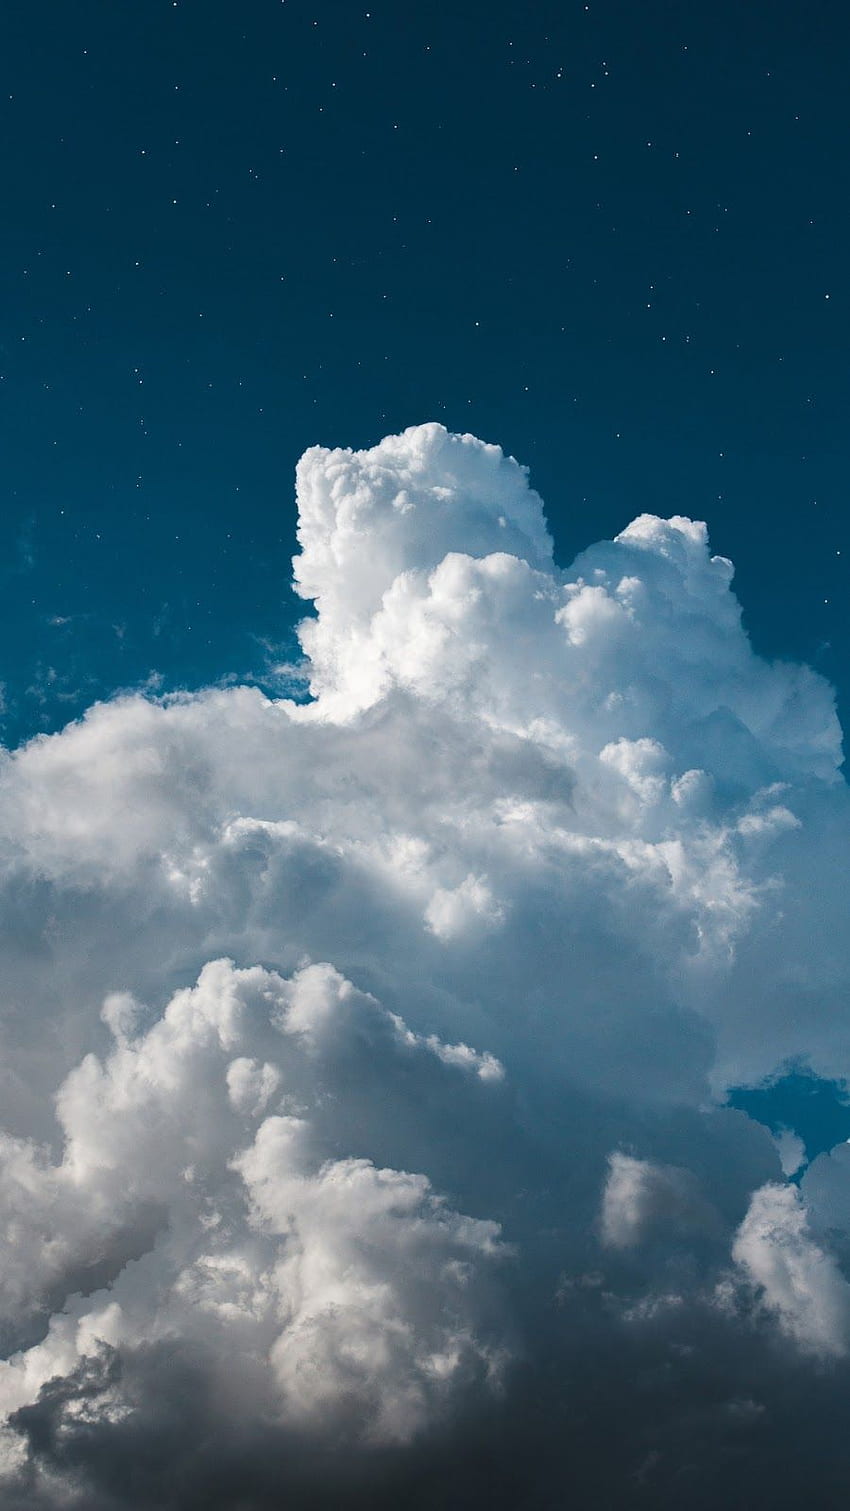 Đám mây là một trong những hiện tượng tự nhiên được yêu thích nhất trên thế giới, và không có bất kỳ lý do gì mà không phải là vậy. Từ những đám mây sừng sững đến những đám mây dịu dàng và thoáng đãng, hãy khám phá mãi mãi với bộ sưu tập ảnh đám mây tuyệt đẹp của chúng tôi.